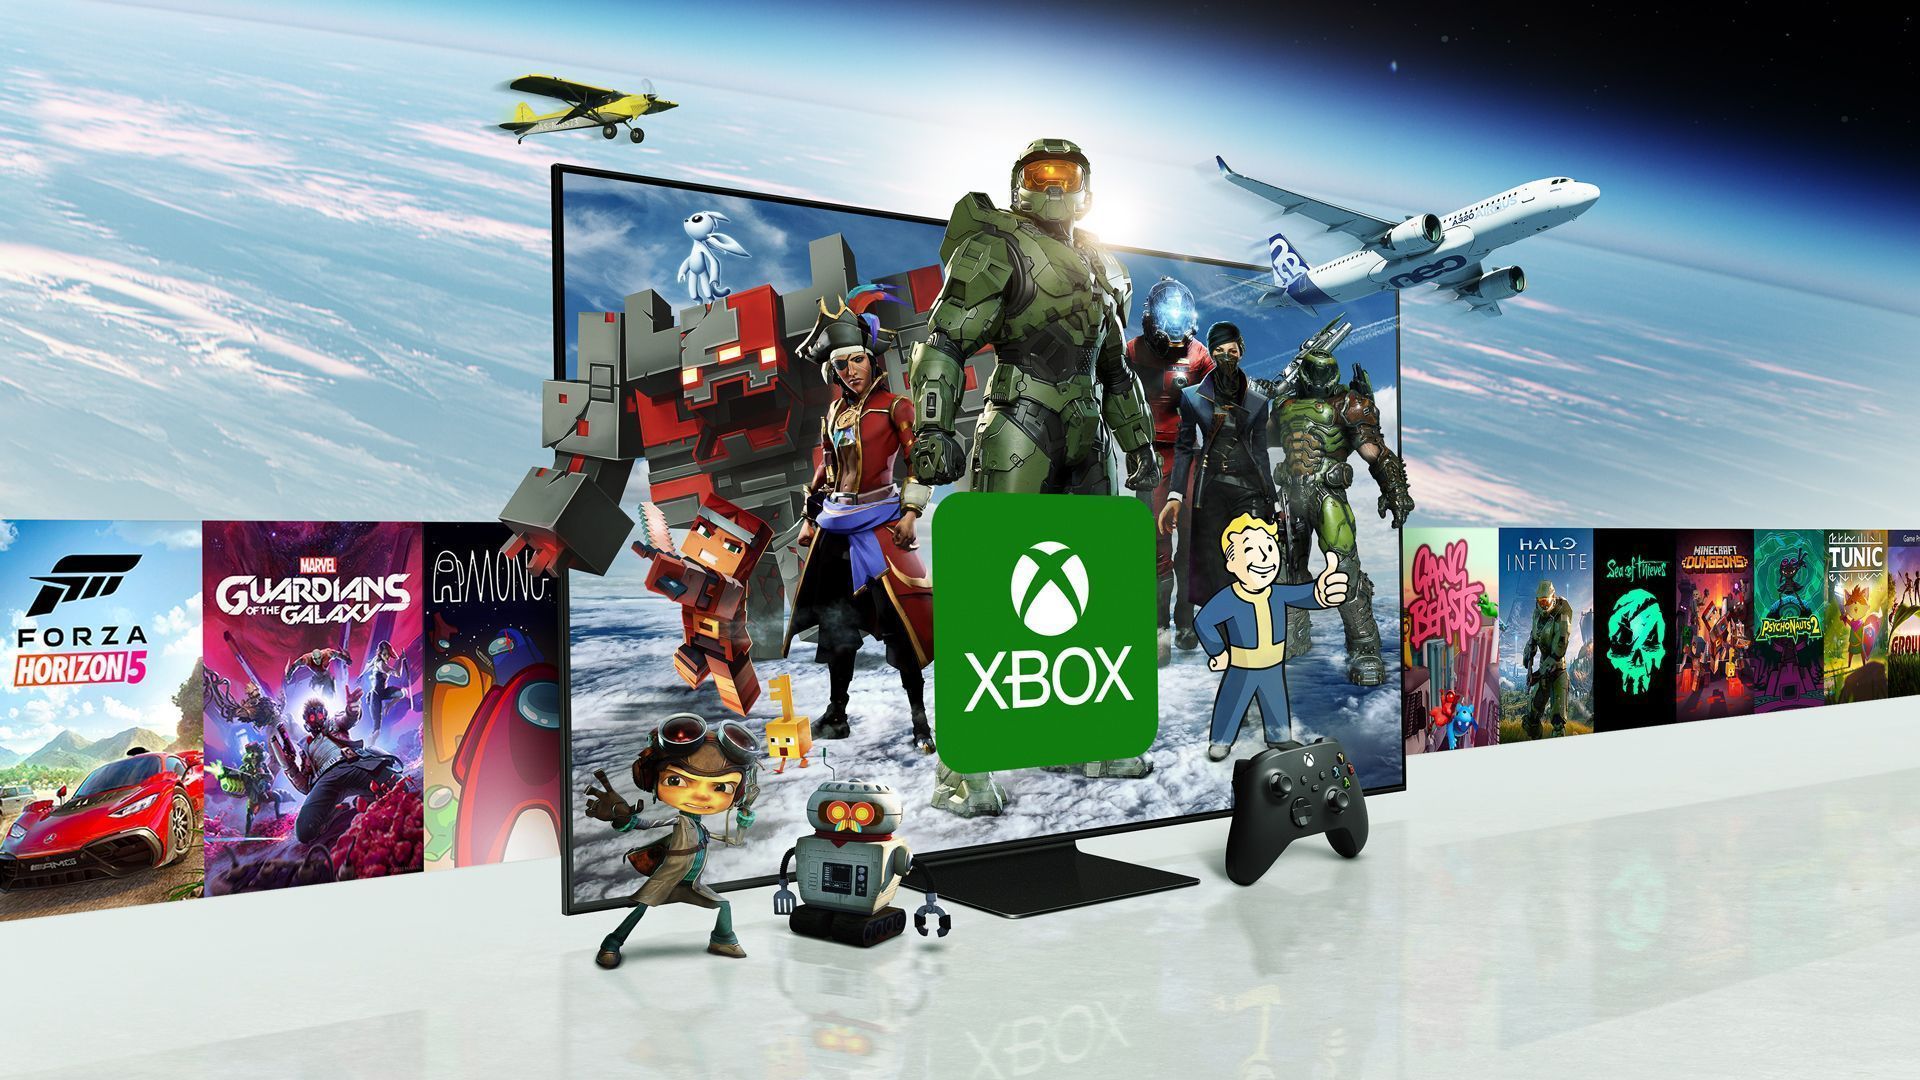 Jogue Xbox na sua Smart TV Samsung; sem precisar de console - Xbox